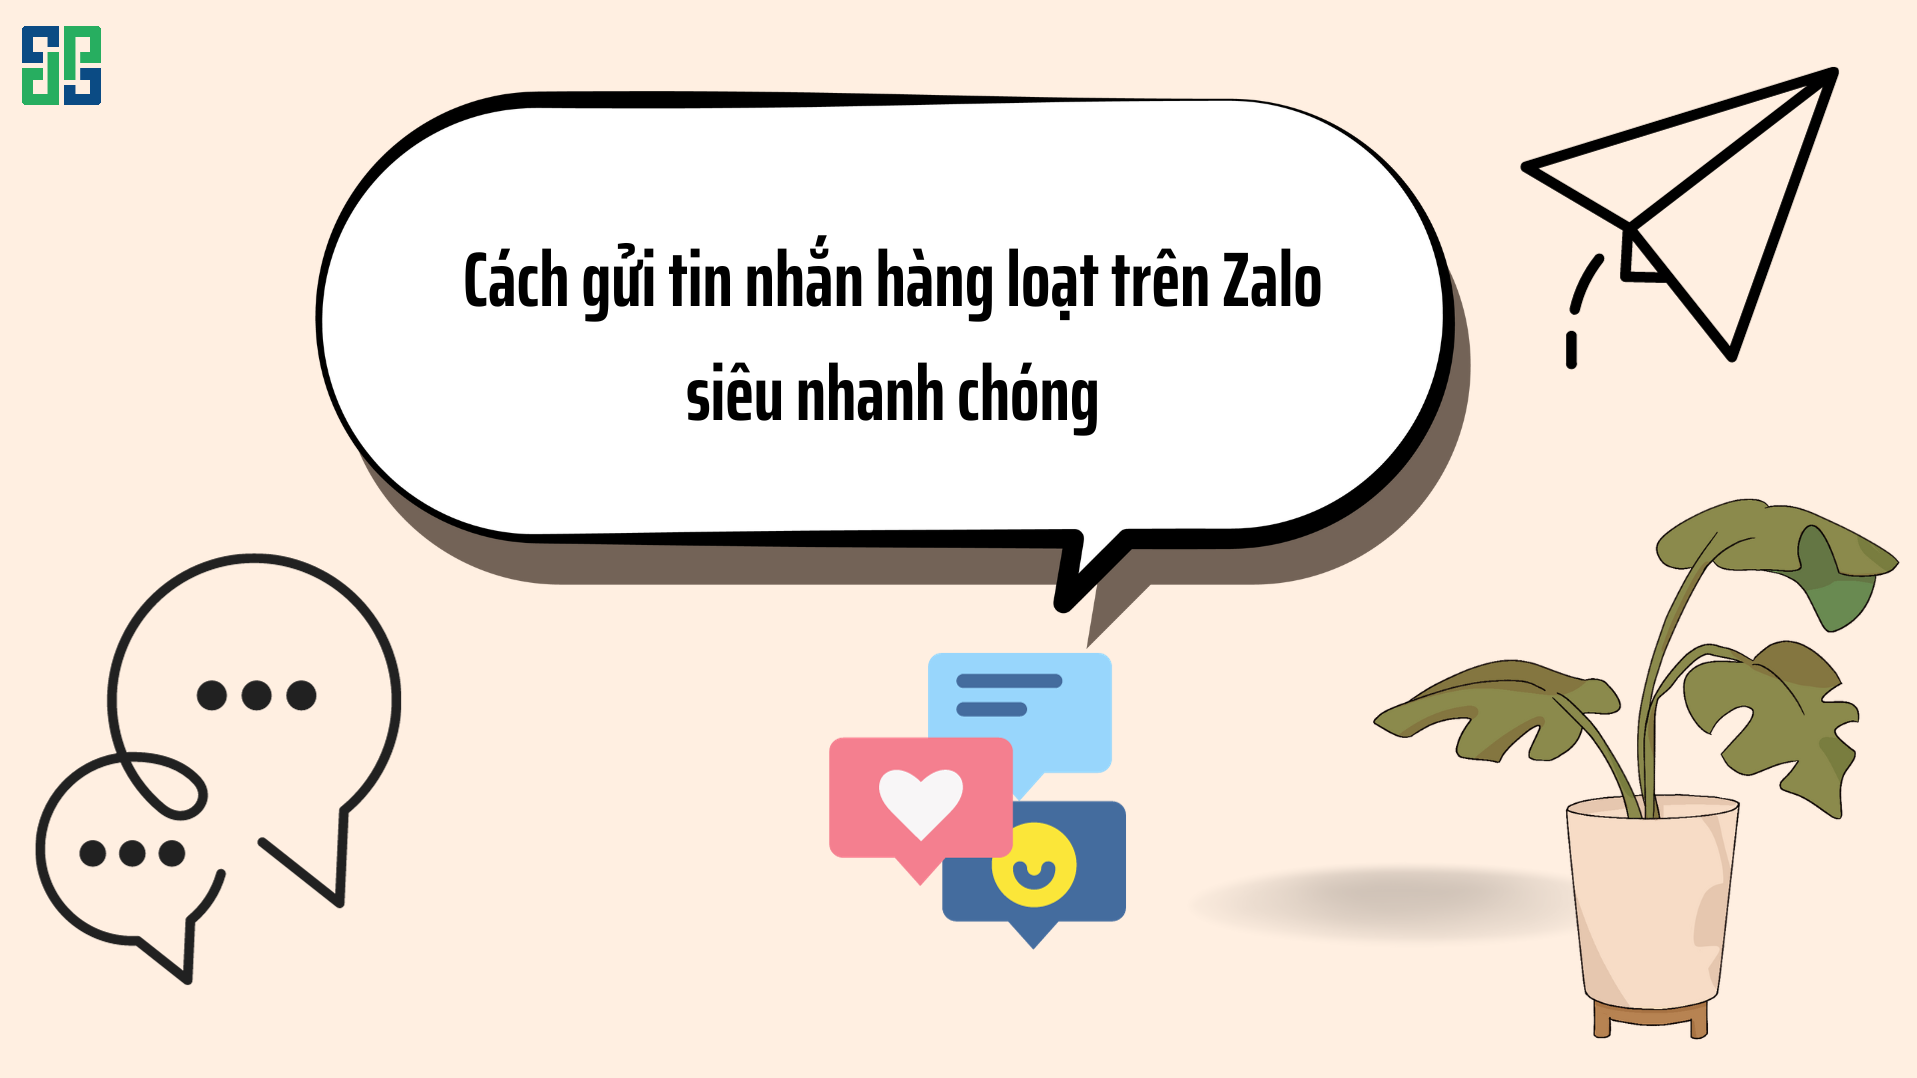 Những điều cần lưu ý khi chọn phần mềm gửi tin nhắn hàng loạt Zalo để có cách marketing tốt nhất